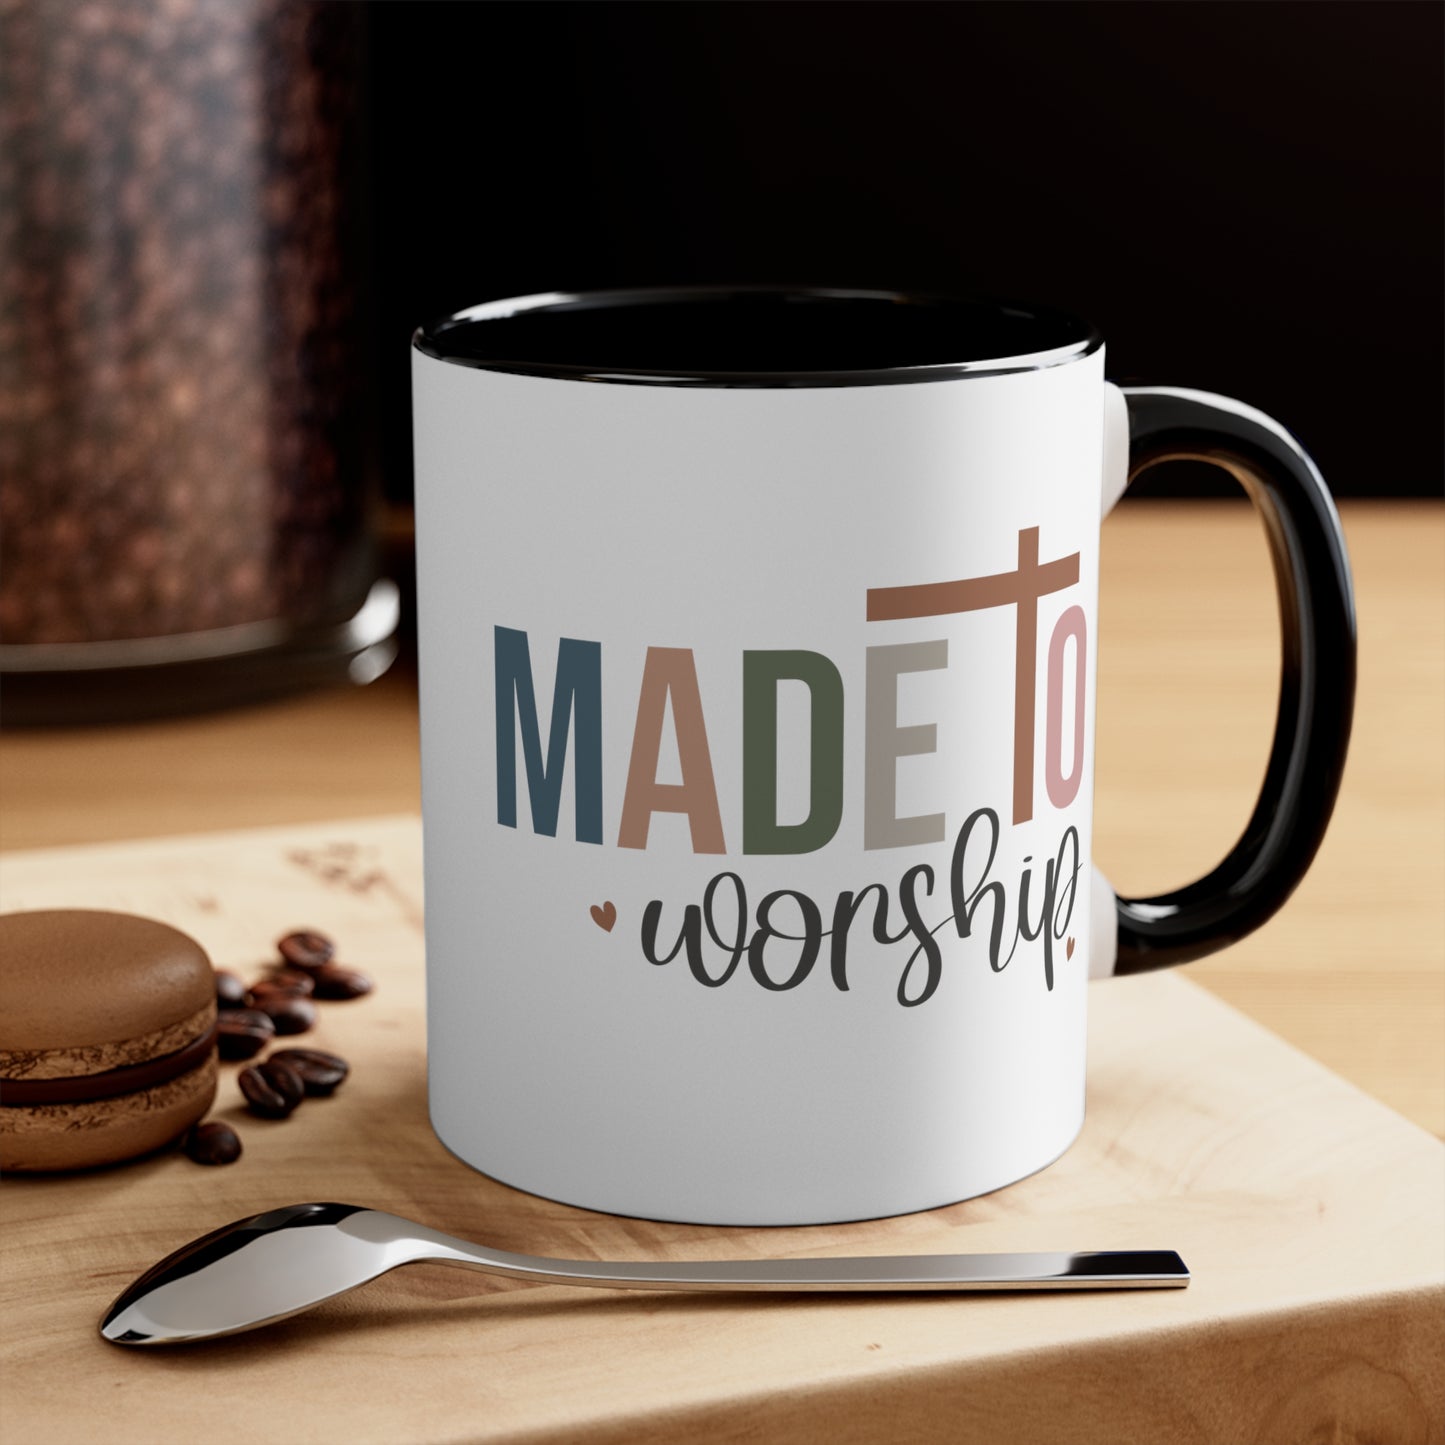 Made to Worship,  Coffee Mug, 11oz